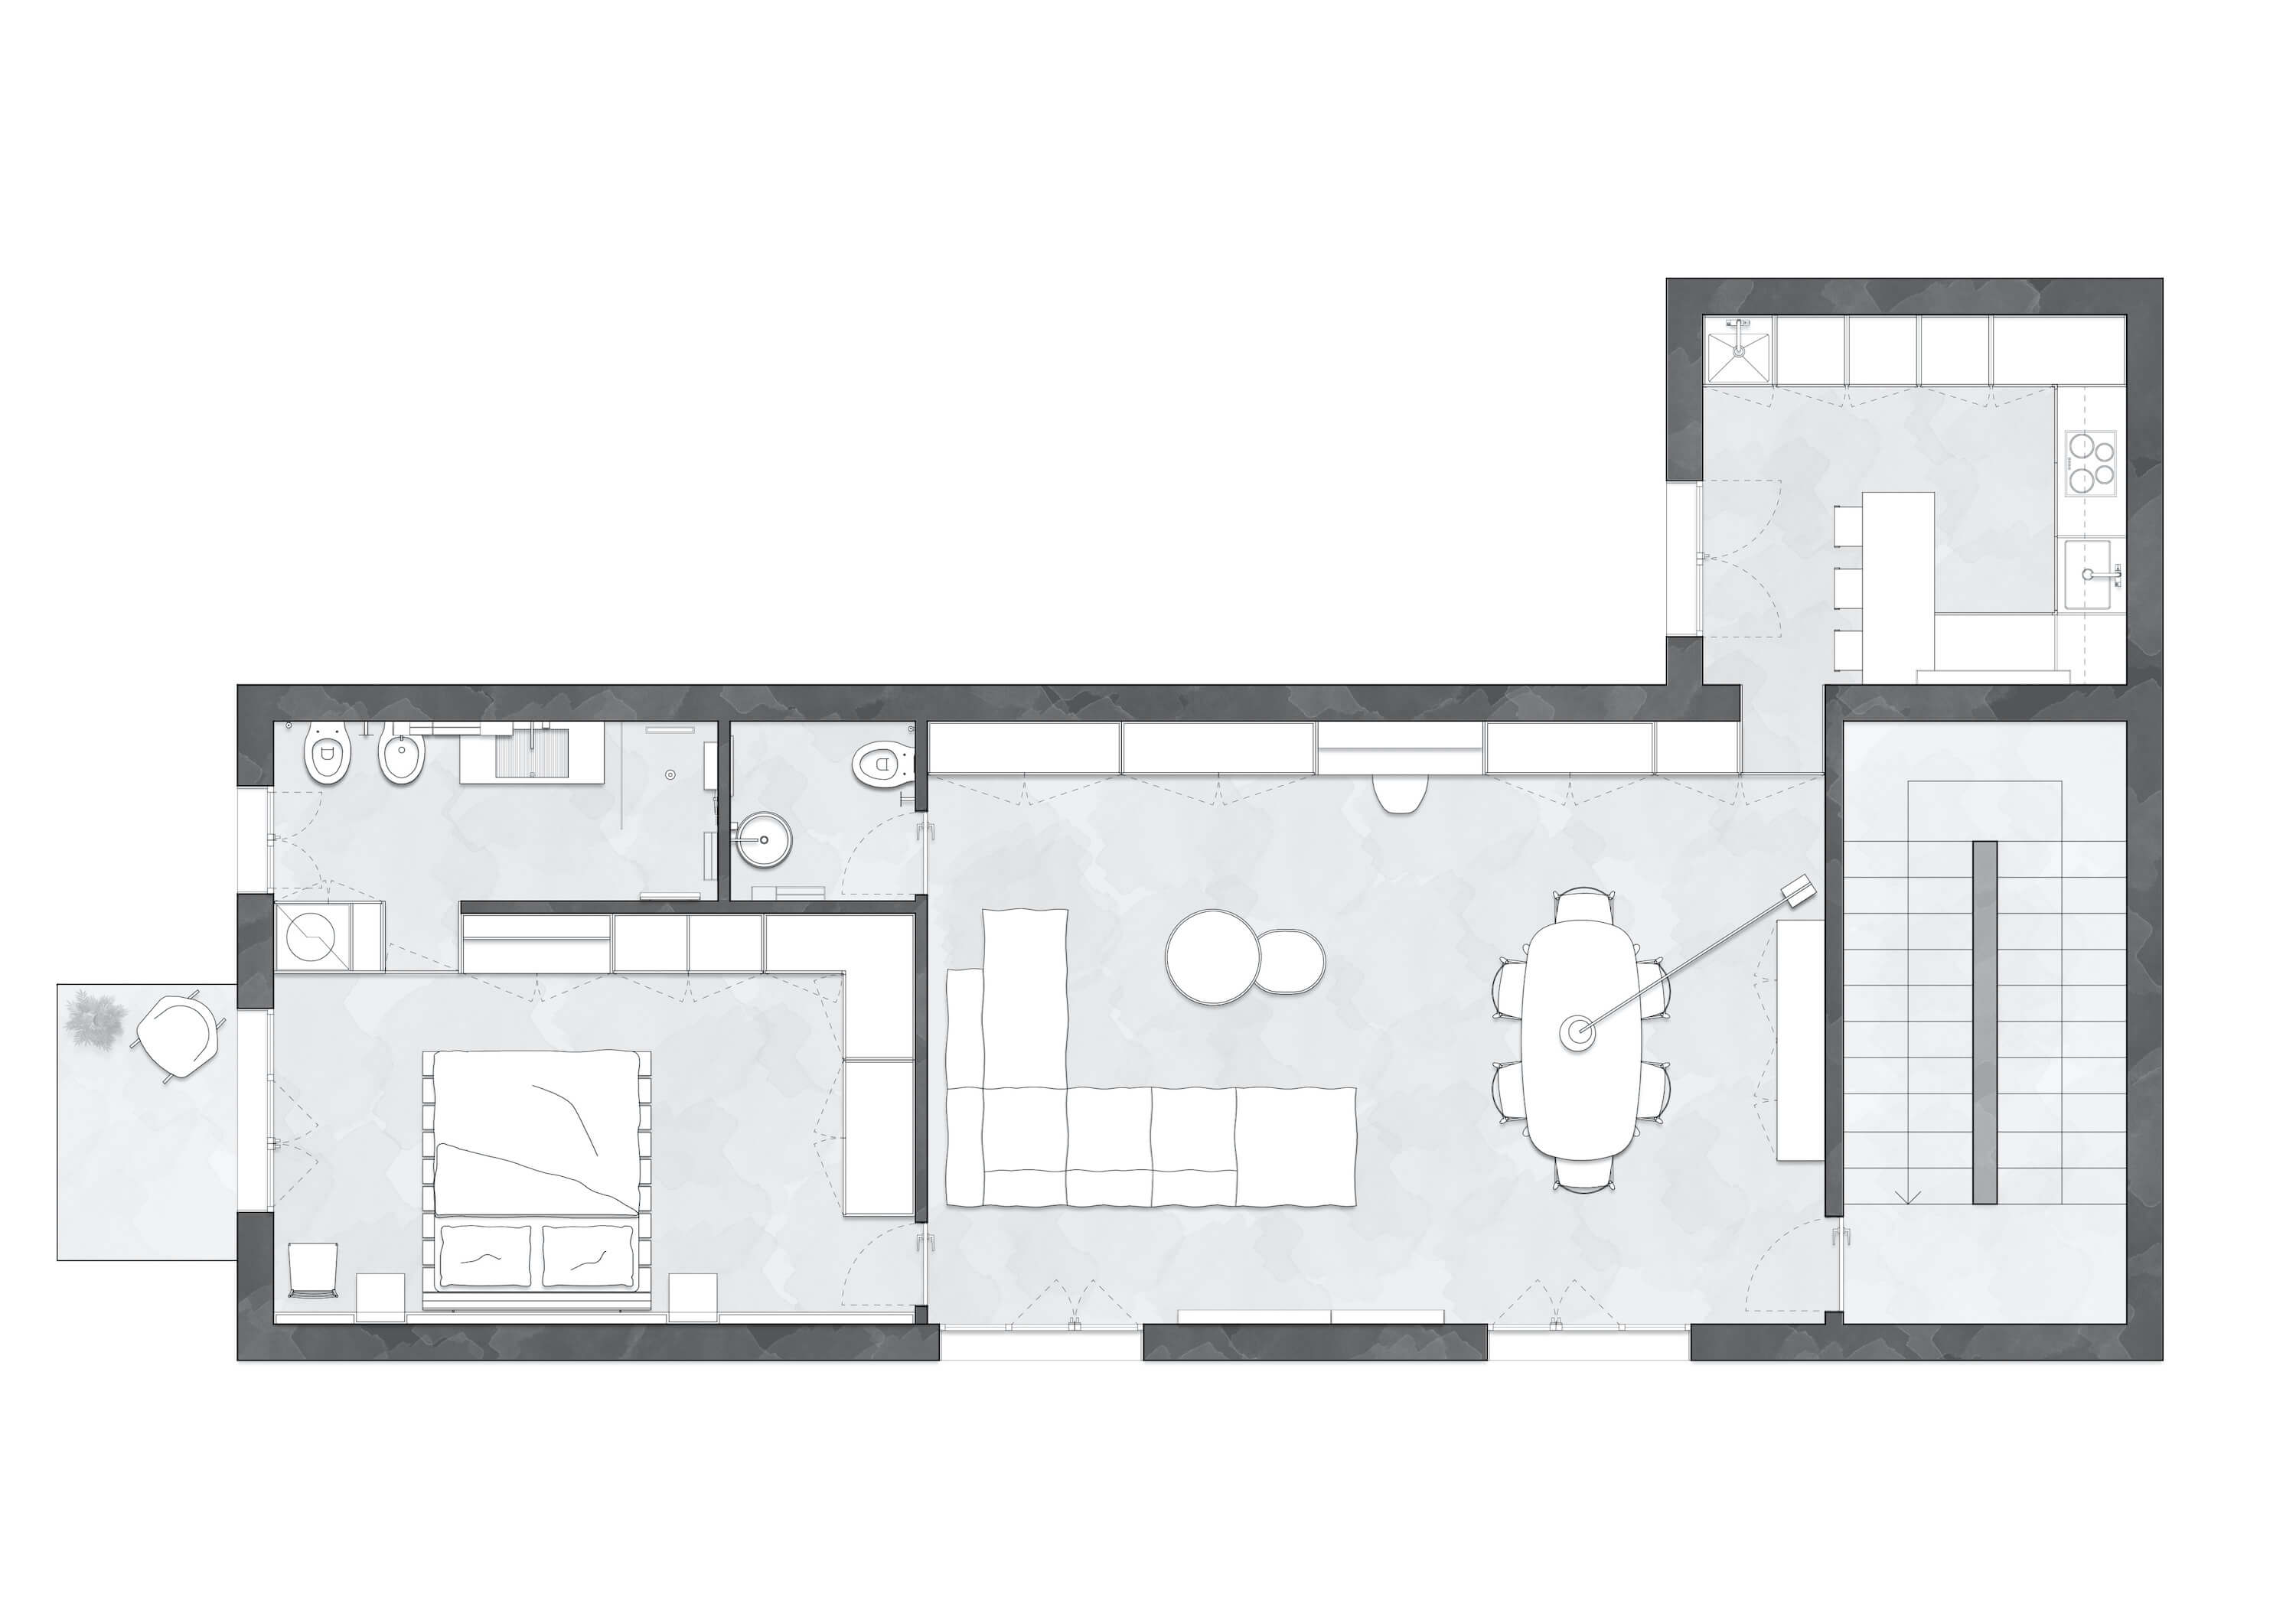 Casa Mia by ZDA | Zupelli Design Architettura